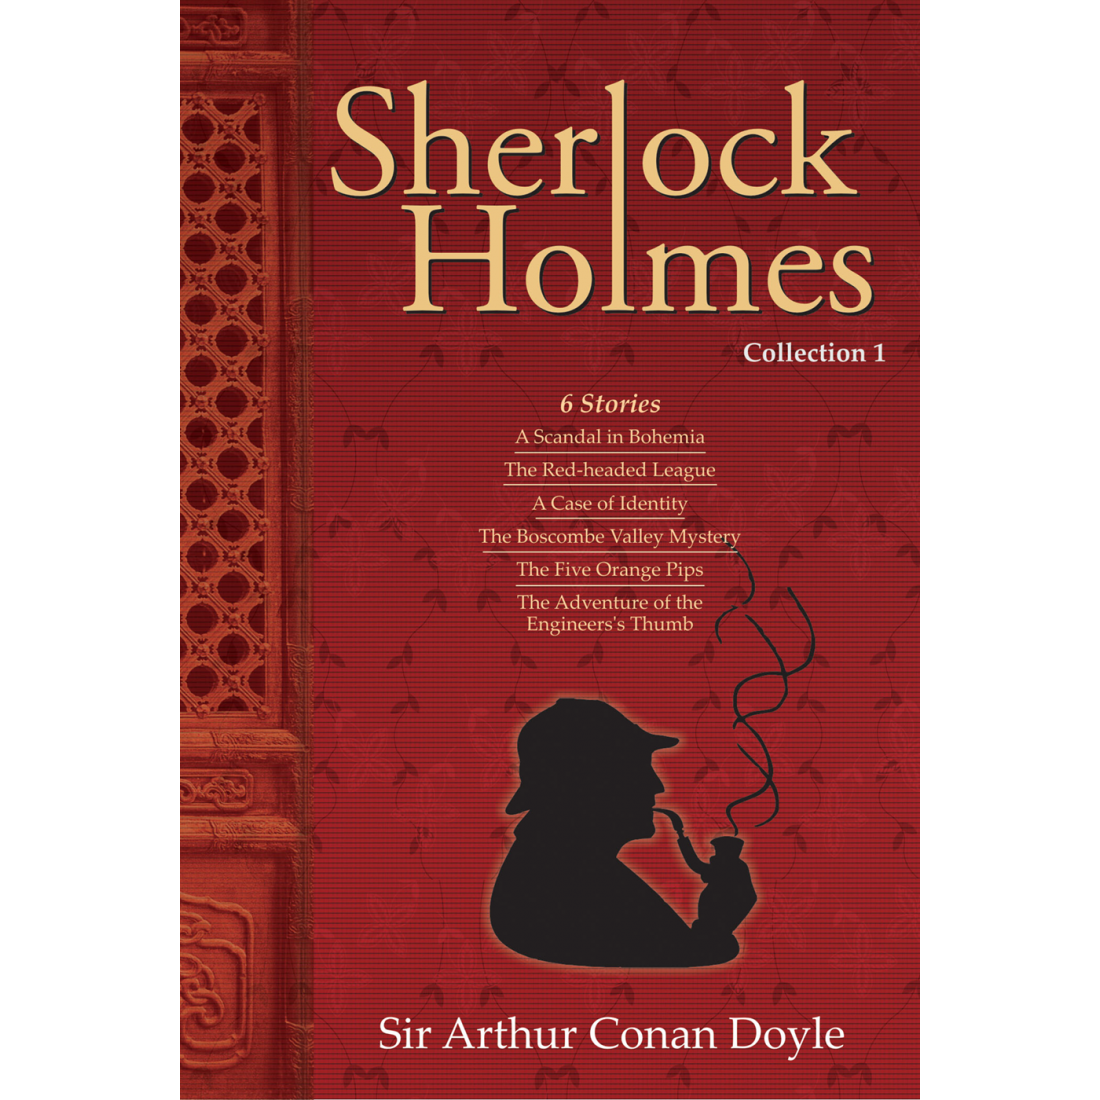 Читать шерлока на английском. Приключения Шерлока Холмса обложка книги на английском.